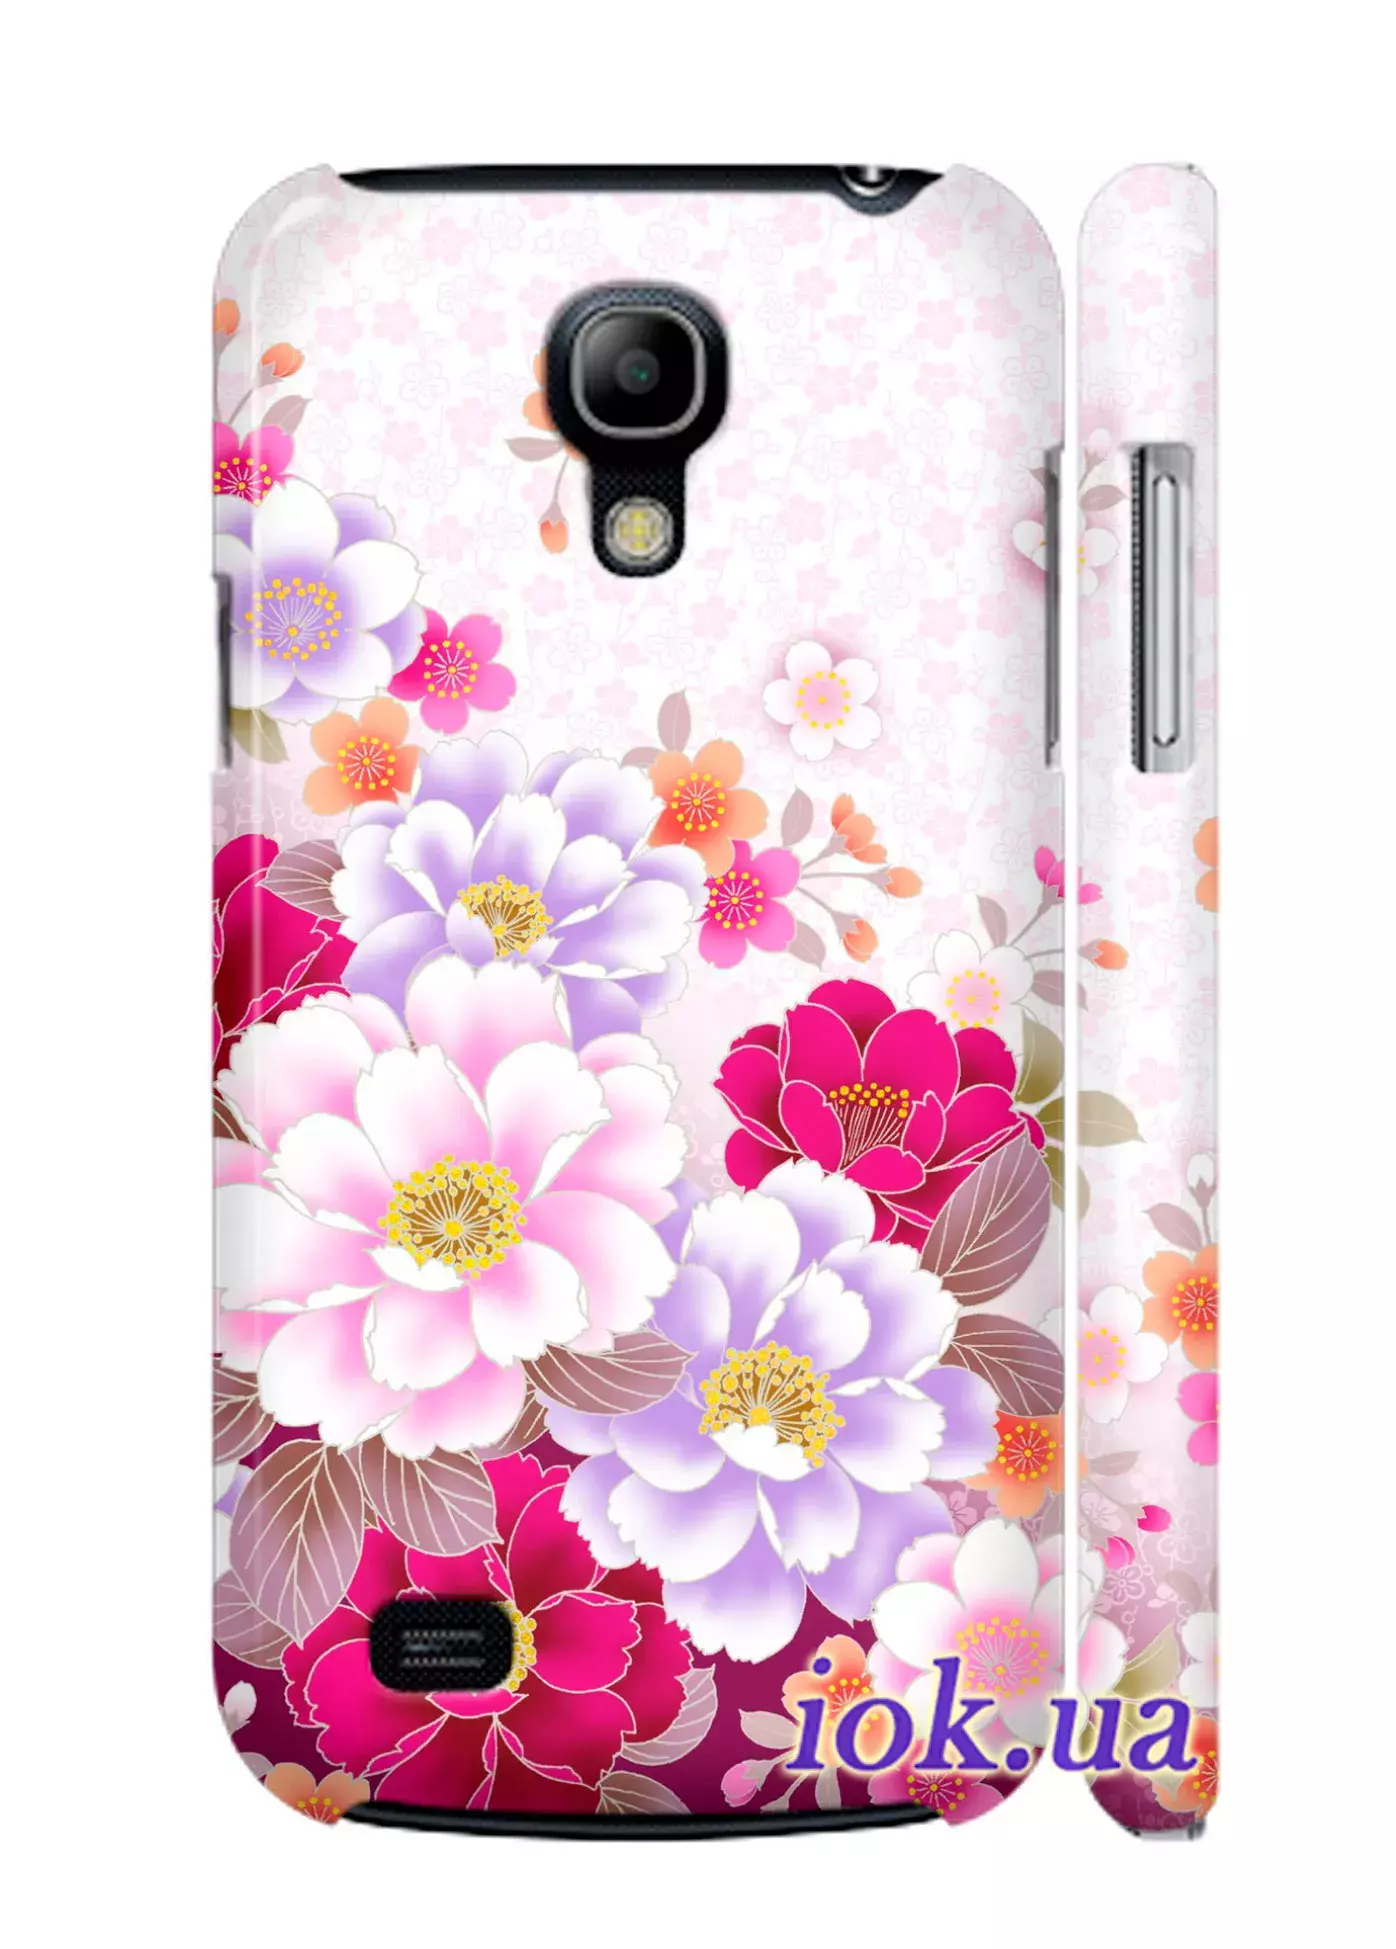 Чехол на Galaxy S4 mini - Чудесные цветы